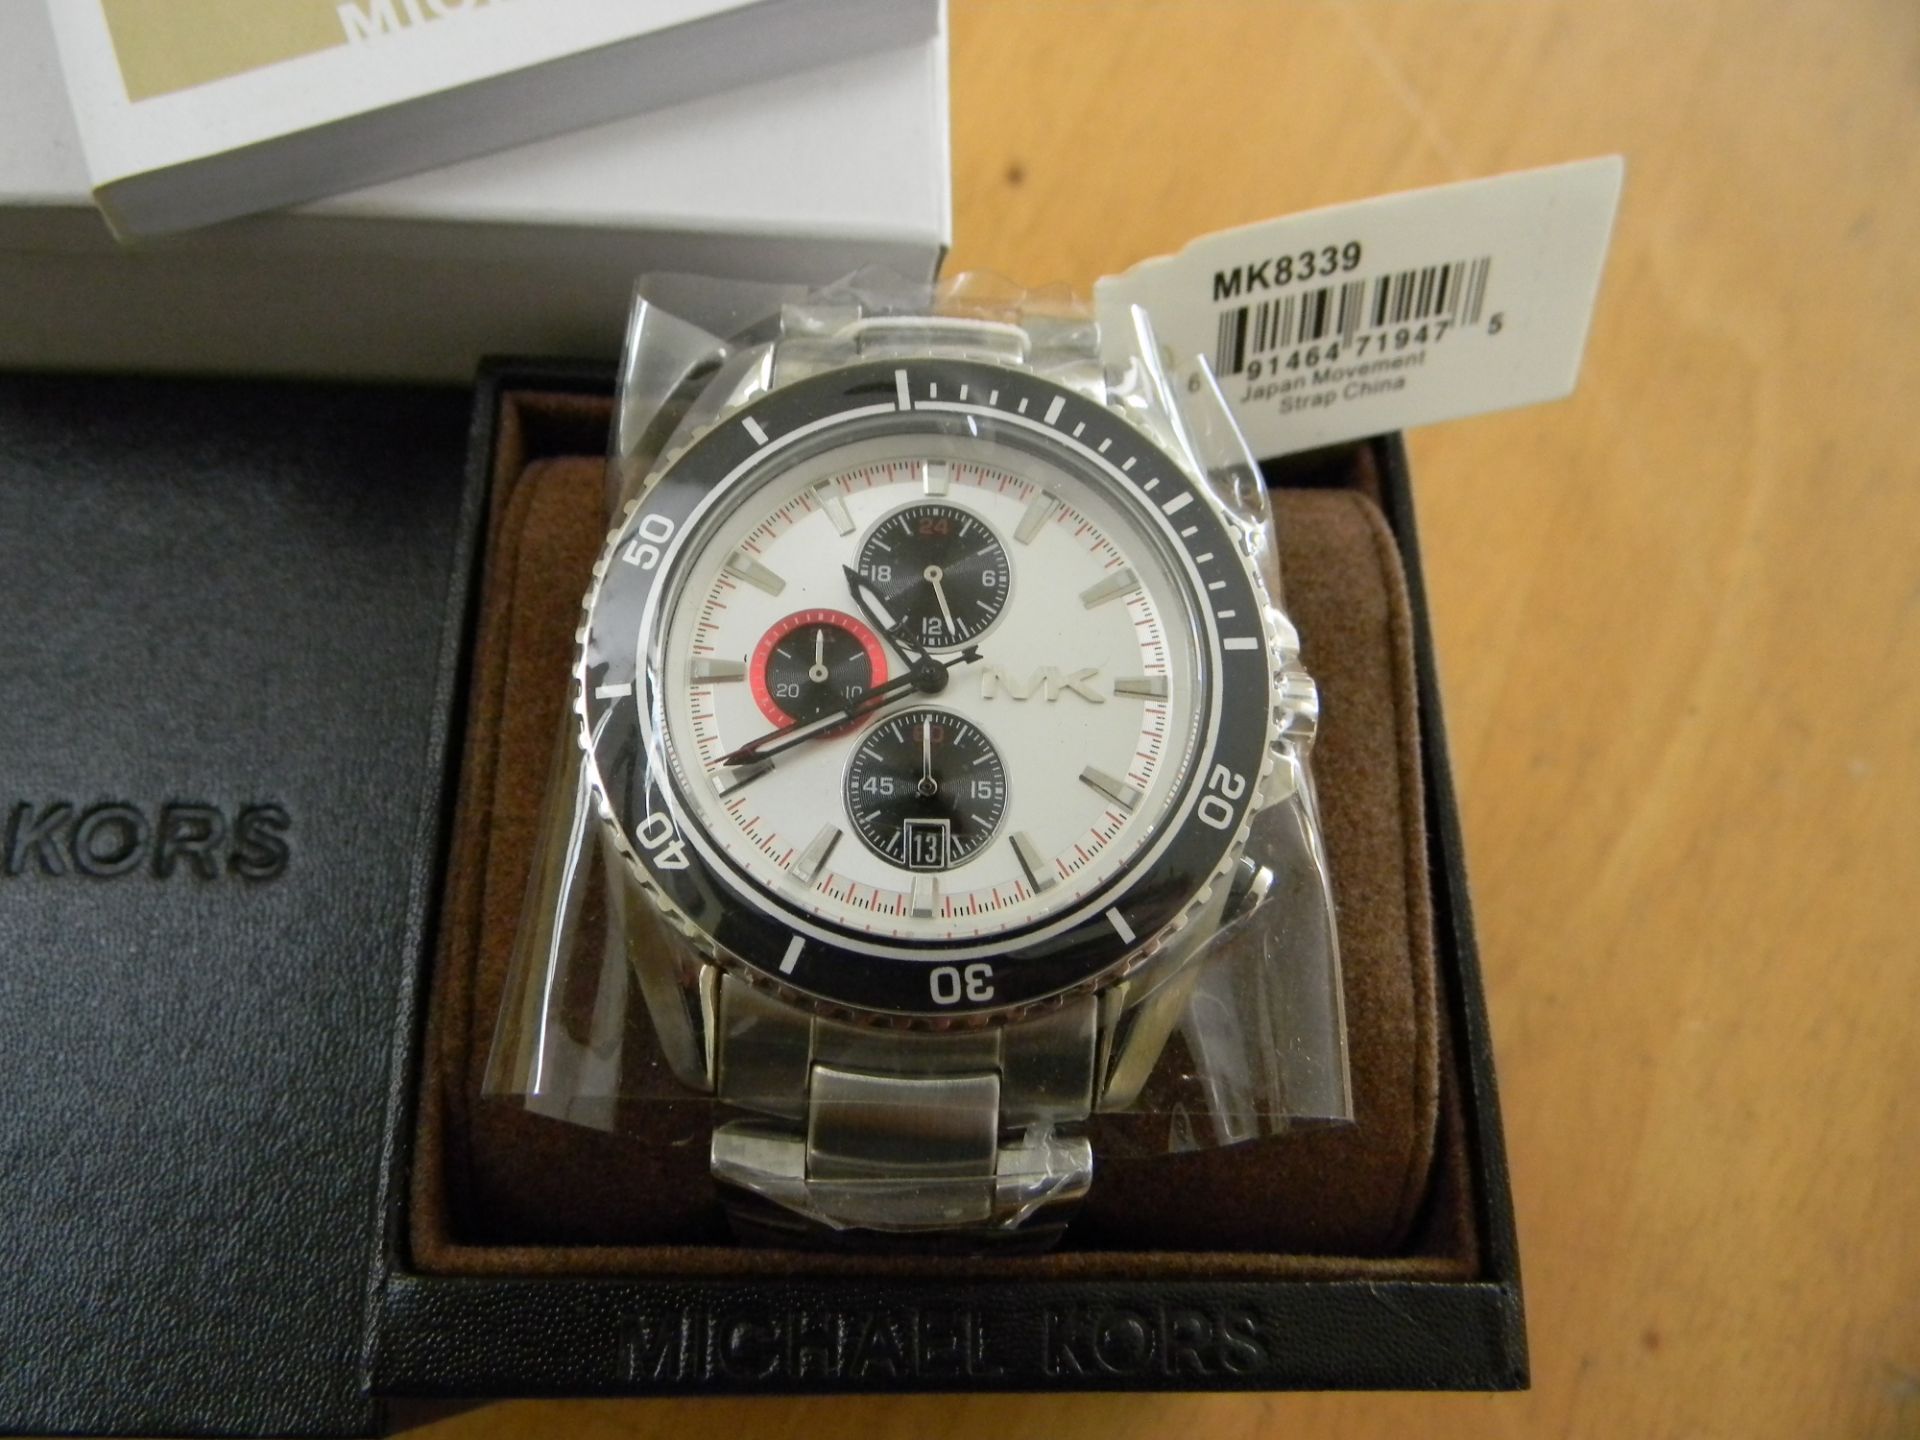 Michael Kors MK8339 Men's Watch - Image 3 of 3